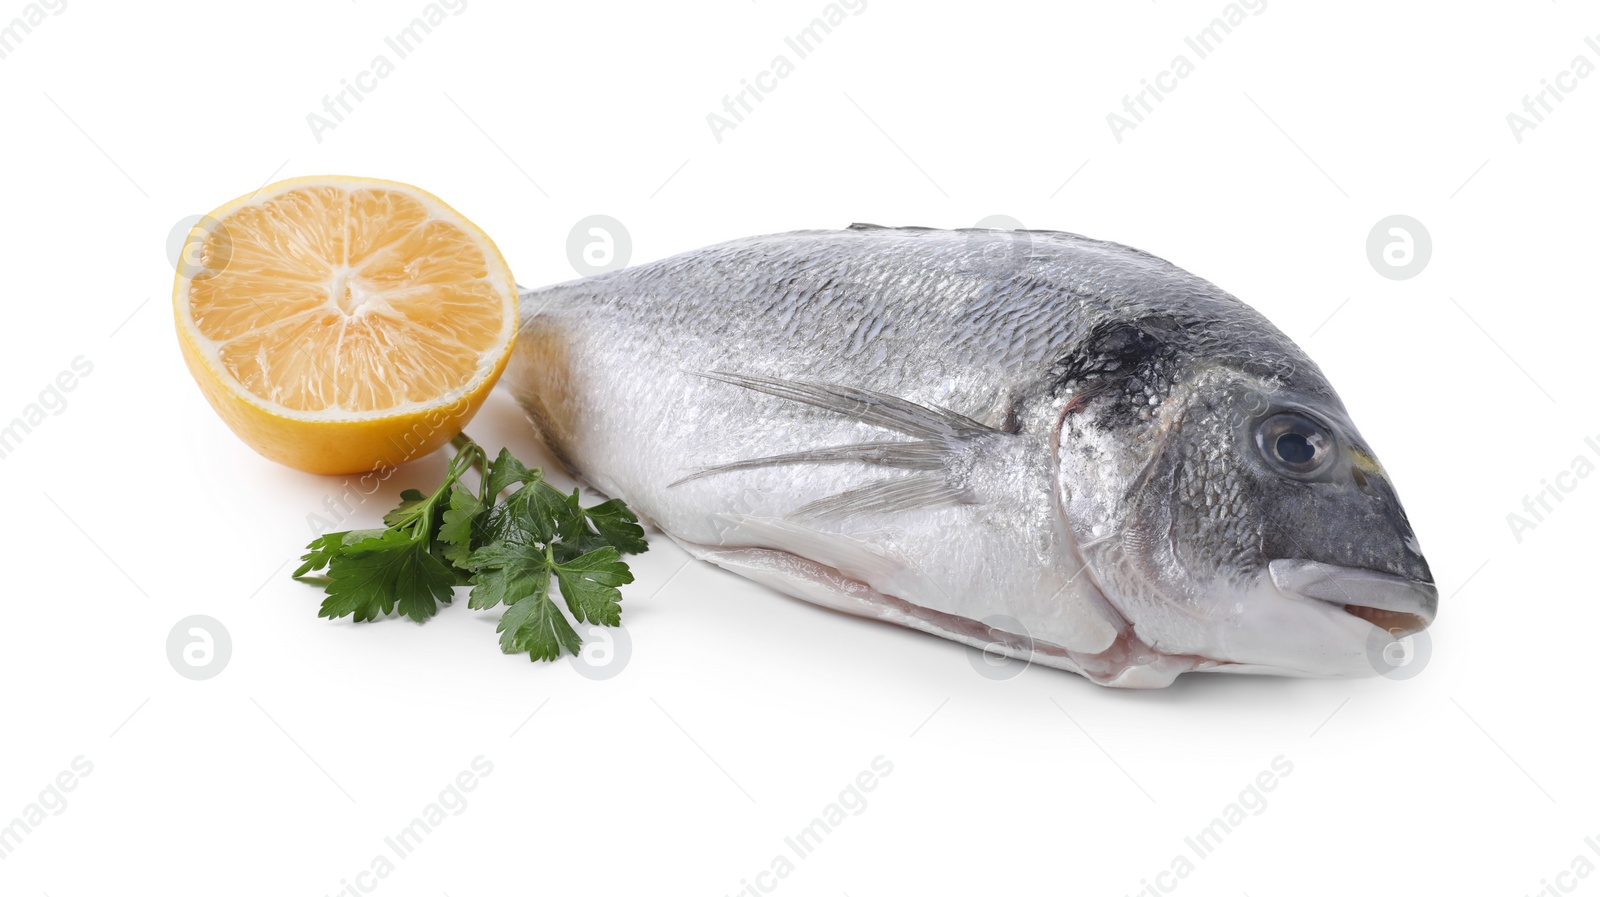 Photo of Raw dorado fish, lemon and parsley isolated on white